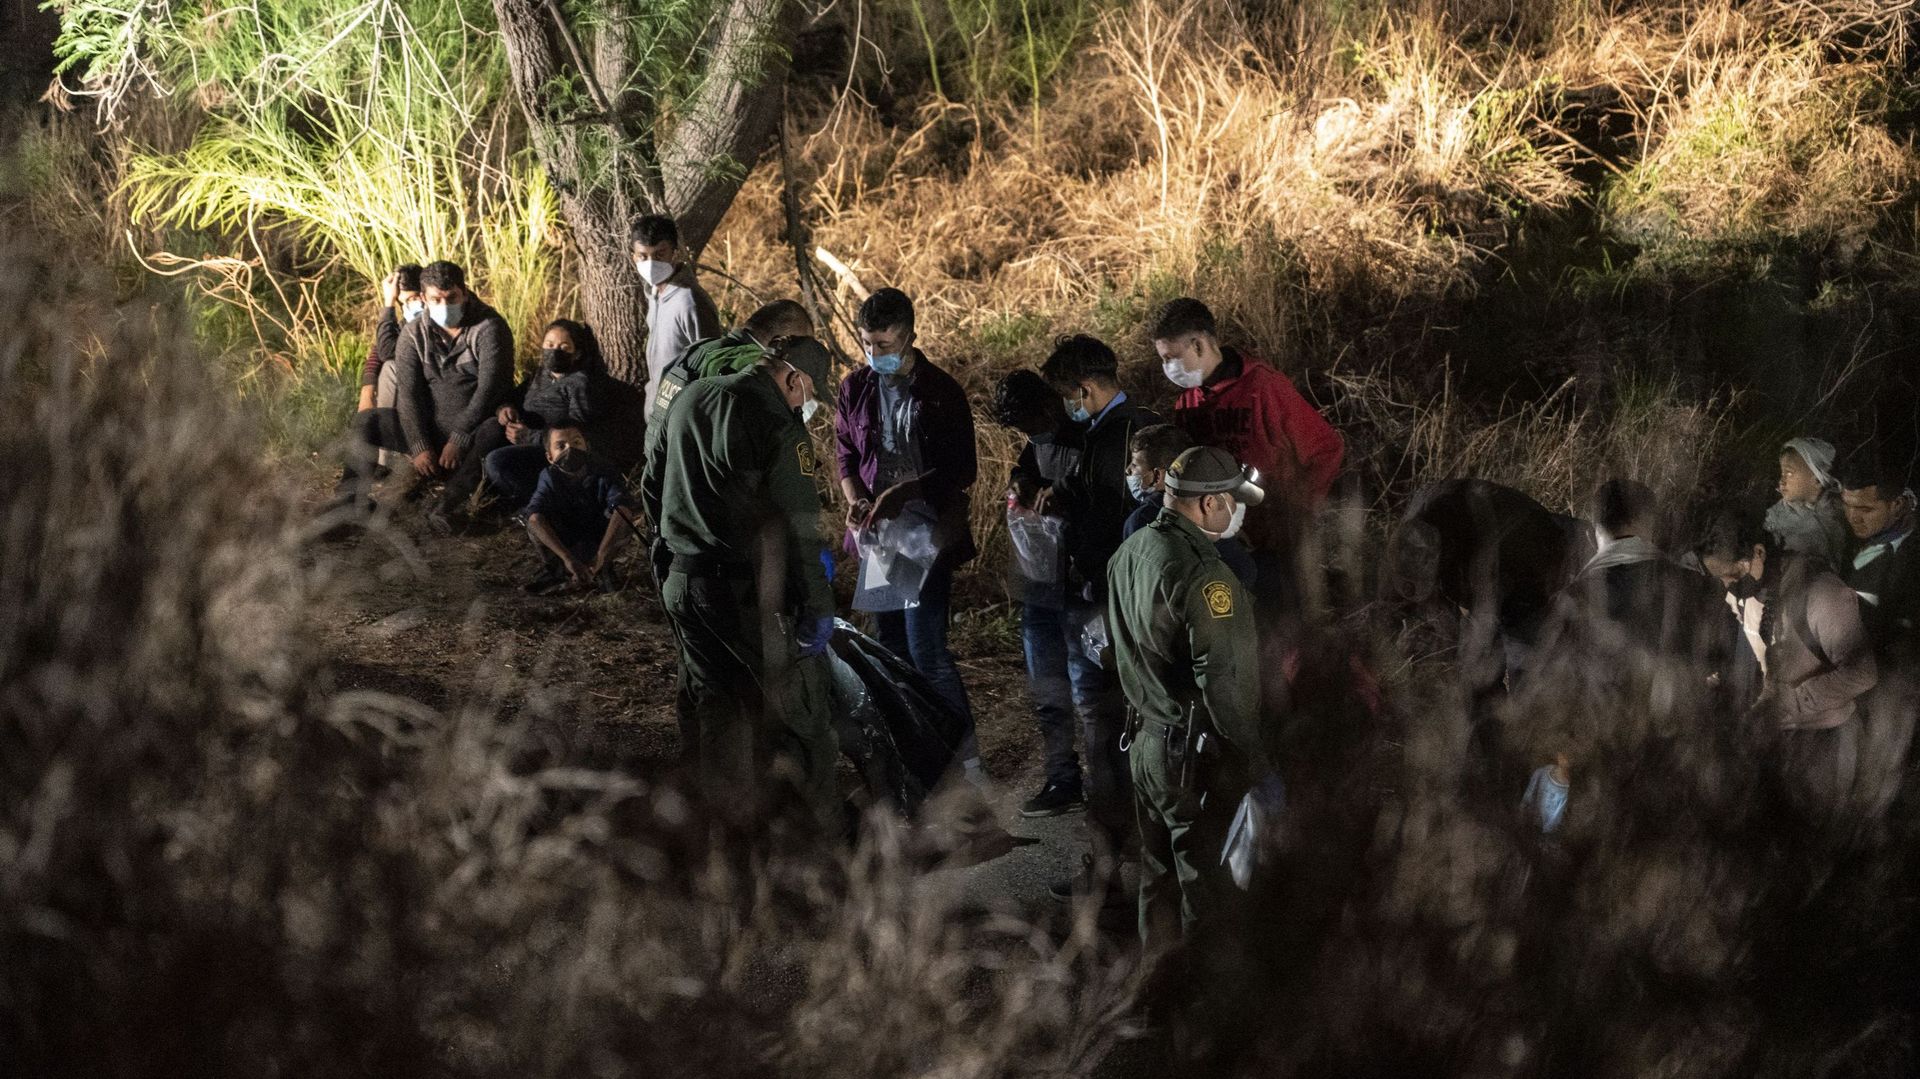 L'administration Biden va réunir des familles de migrants séparés sous Trump